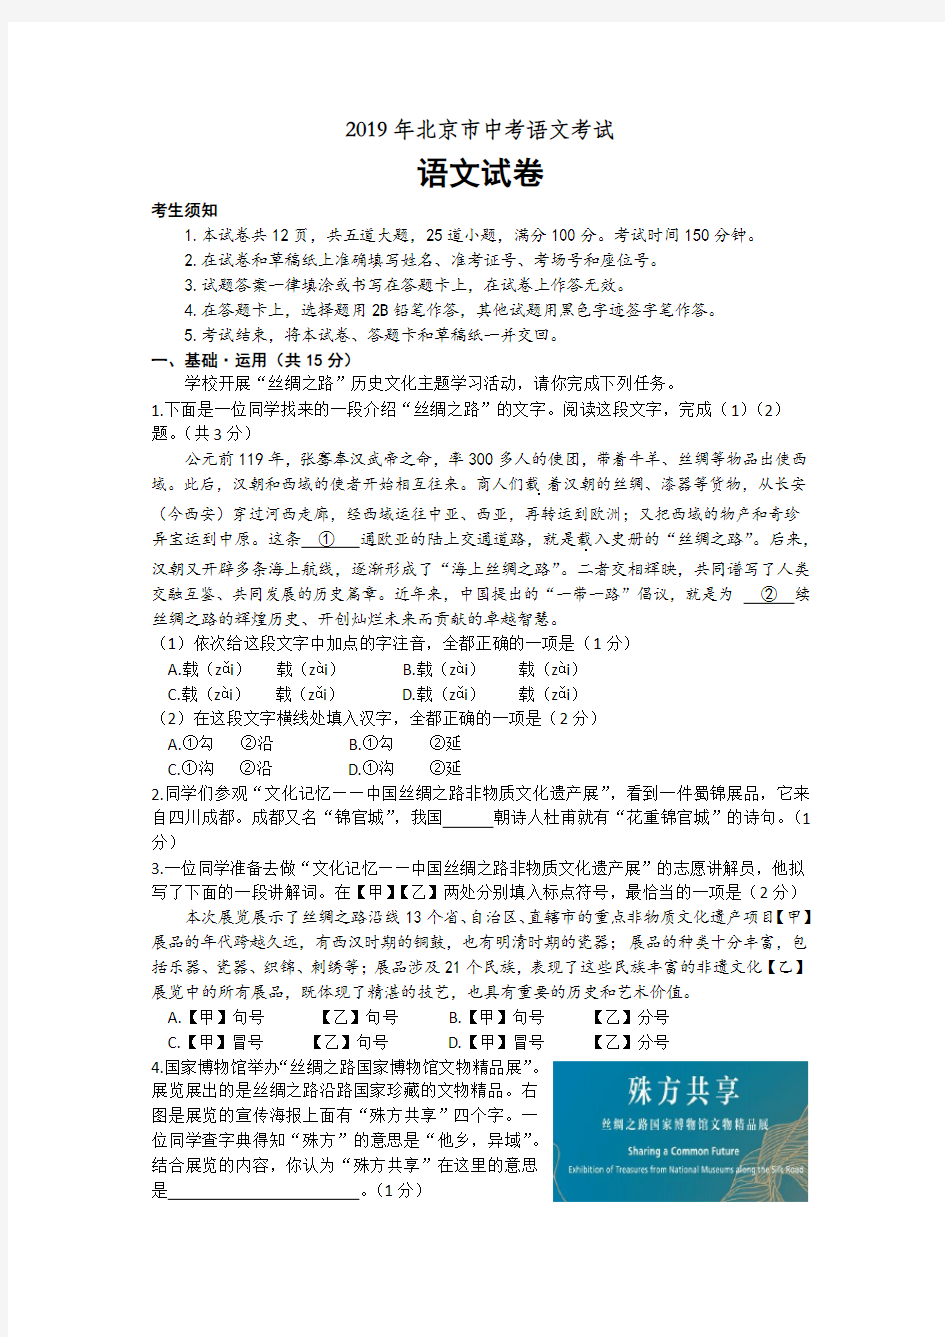 【真题】2019年北京市中考语文考试语文试卷(解析版)